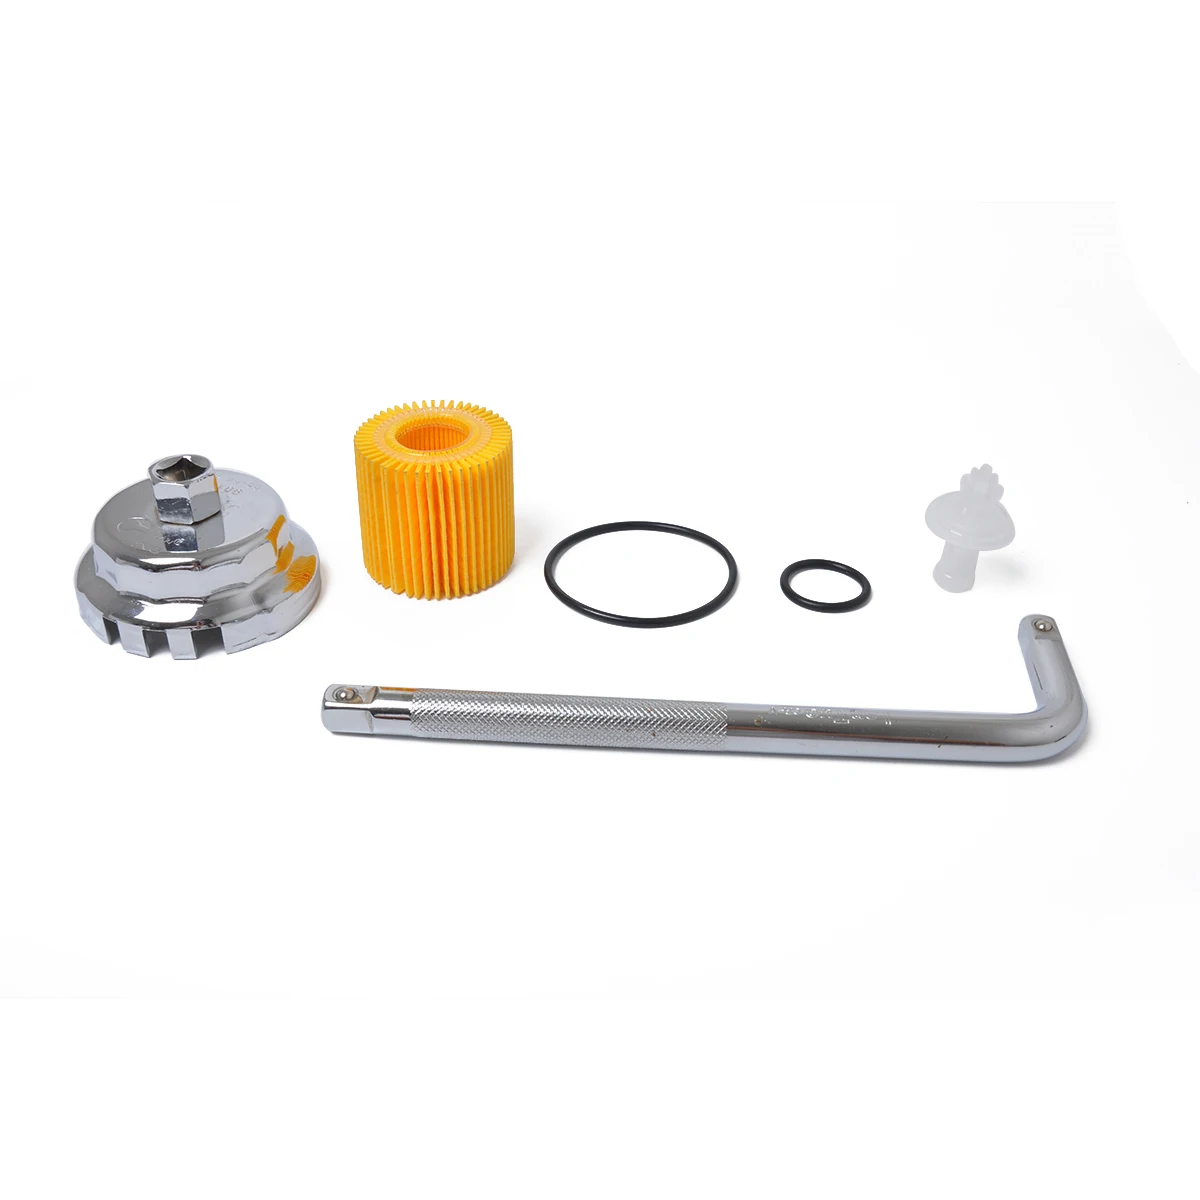 1 комплект новейший 3 в 1 Масляный фильтр и крышка фильтра и колпачок Тип масляной сетки гаечный ключ для Toyota для corolla Prius Инструменты для ремонта автомобилей